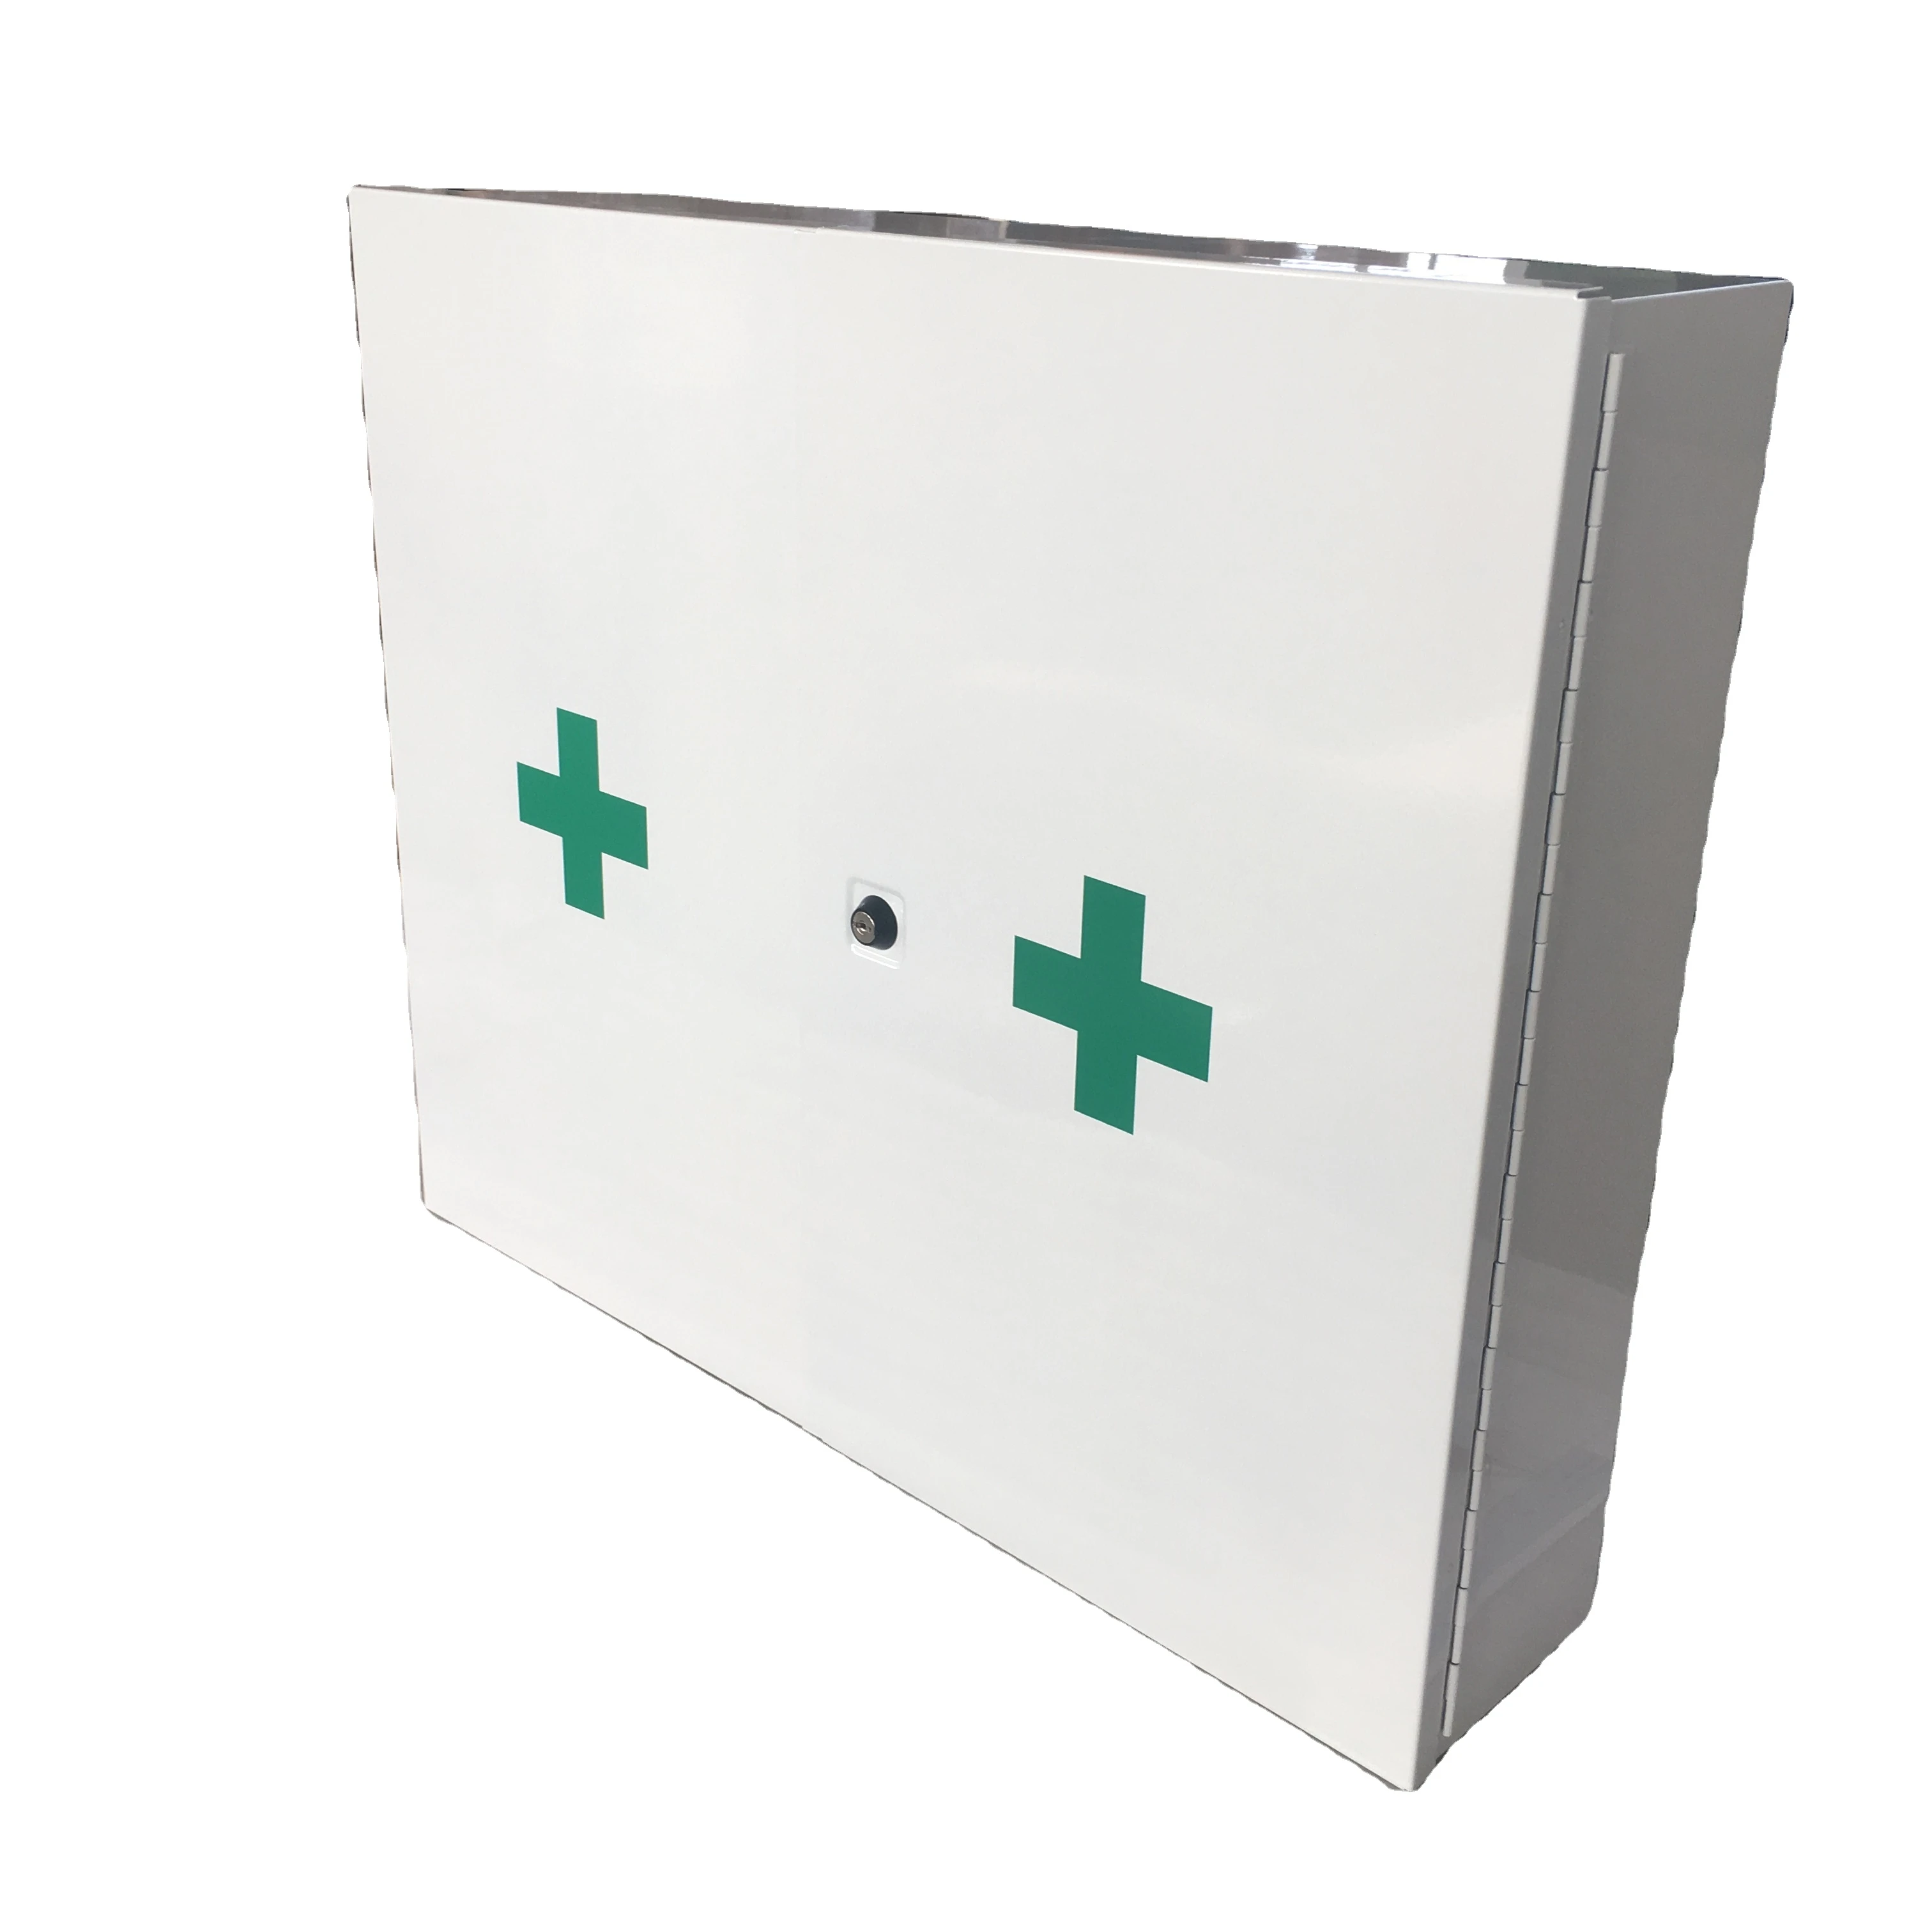 first aid wall box